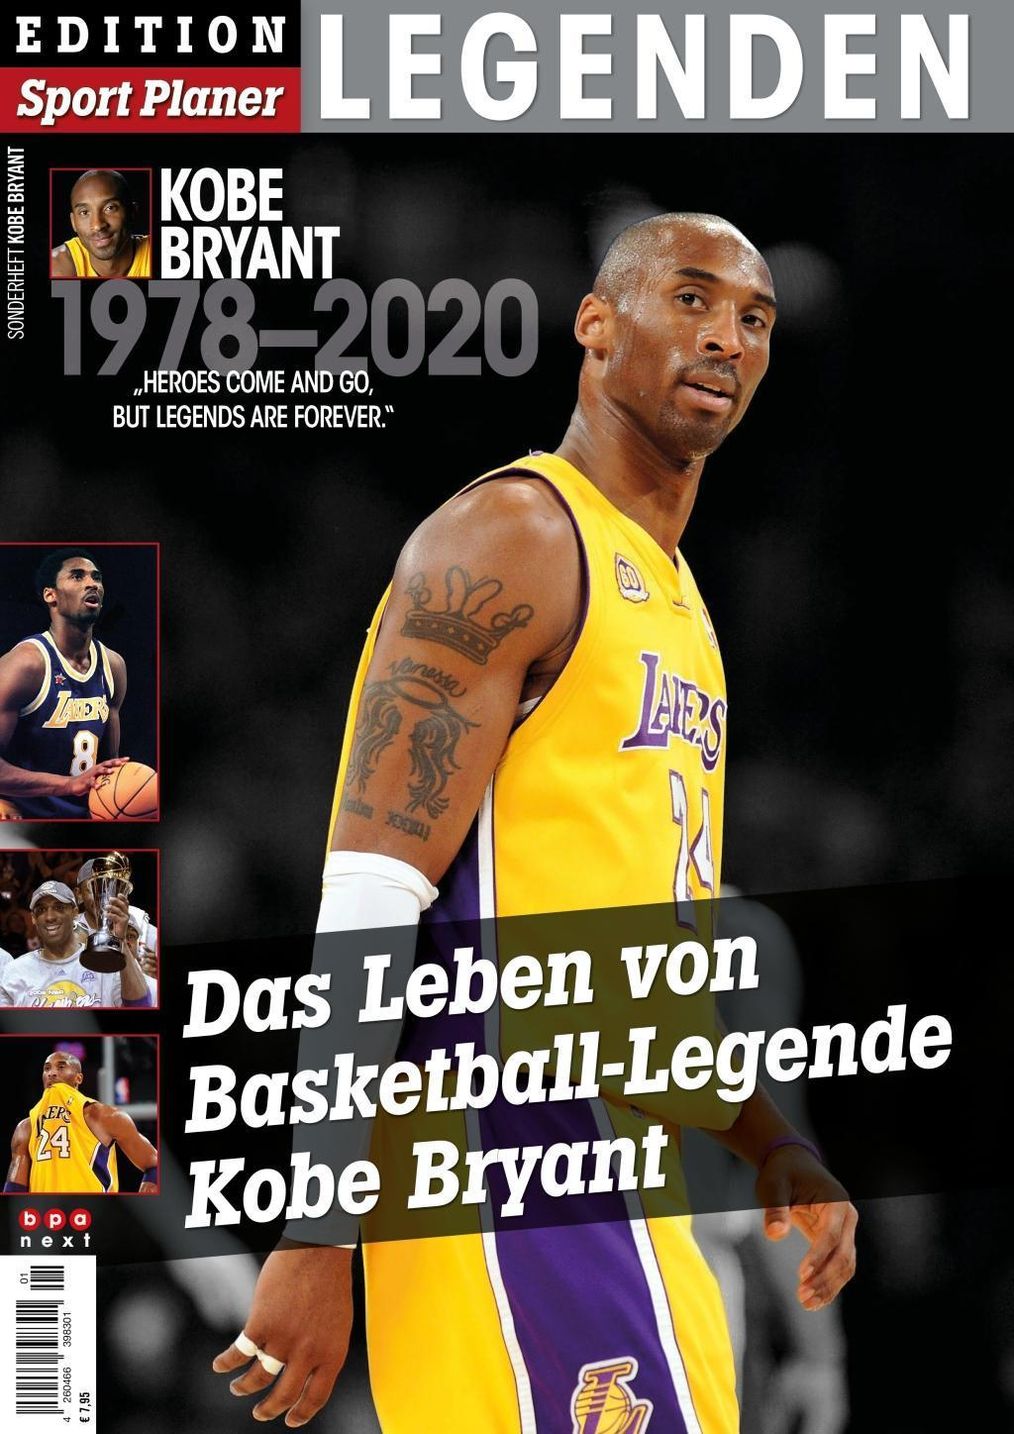 Das Leben von Basketball-Legende Kobe Bryant Buch versandkostenfrei